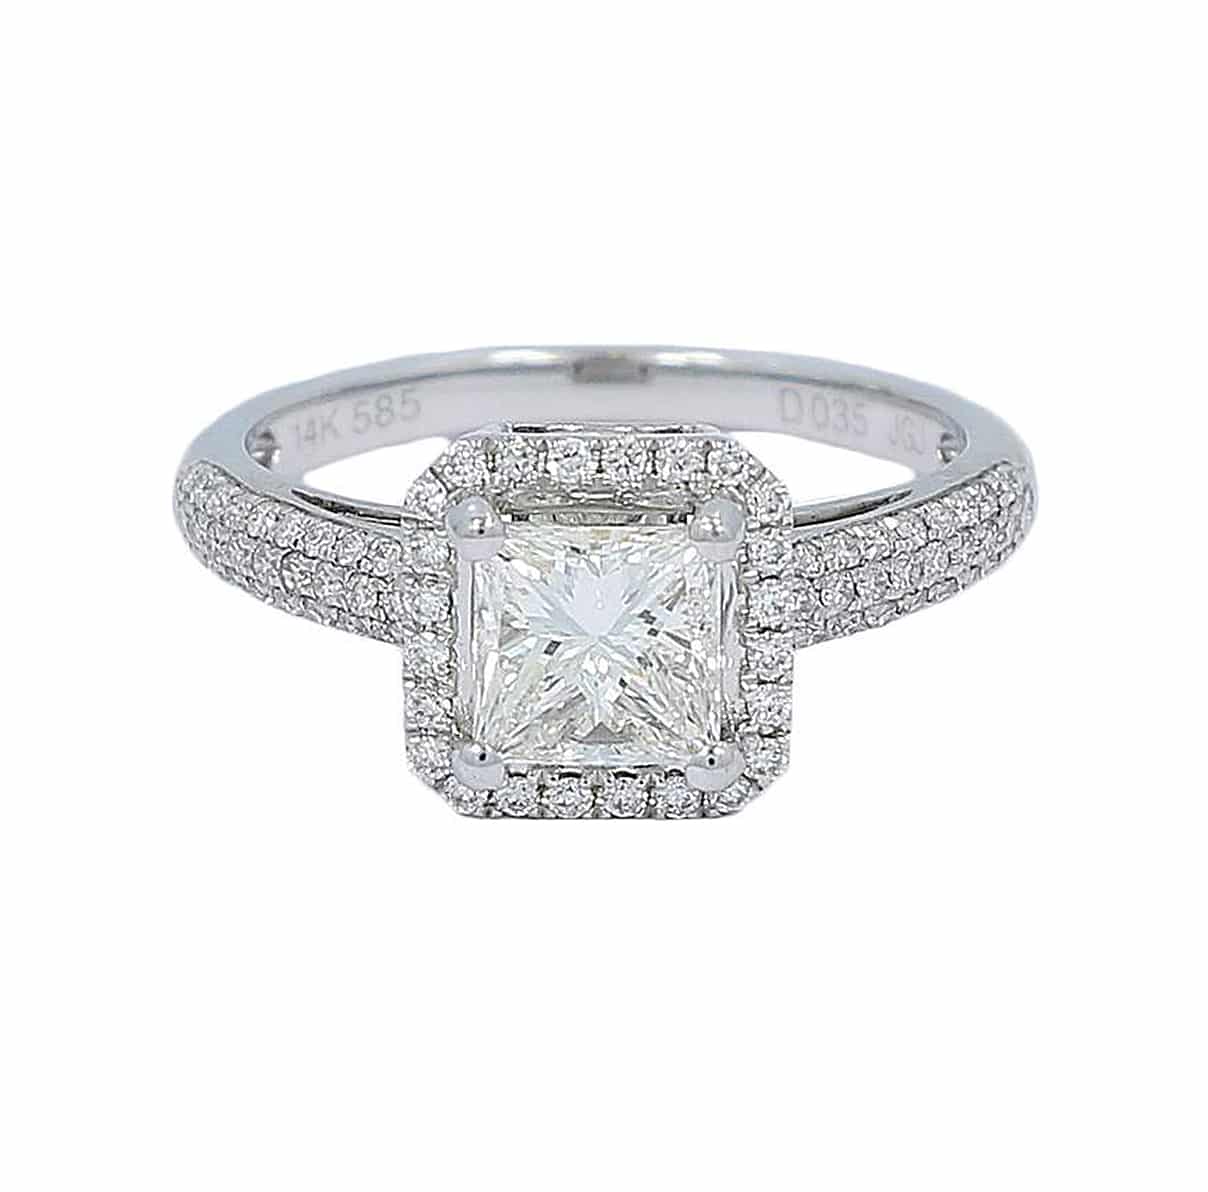 Princess shaped diamond ring